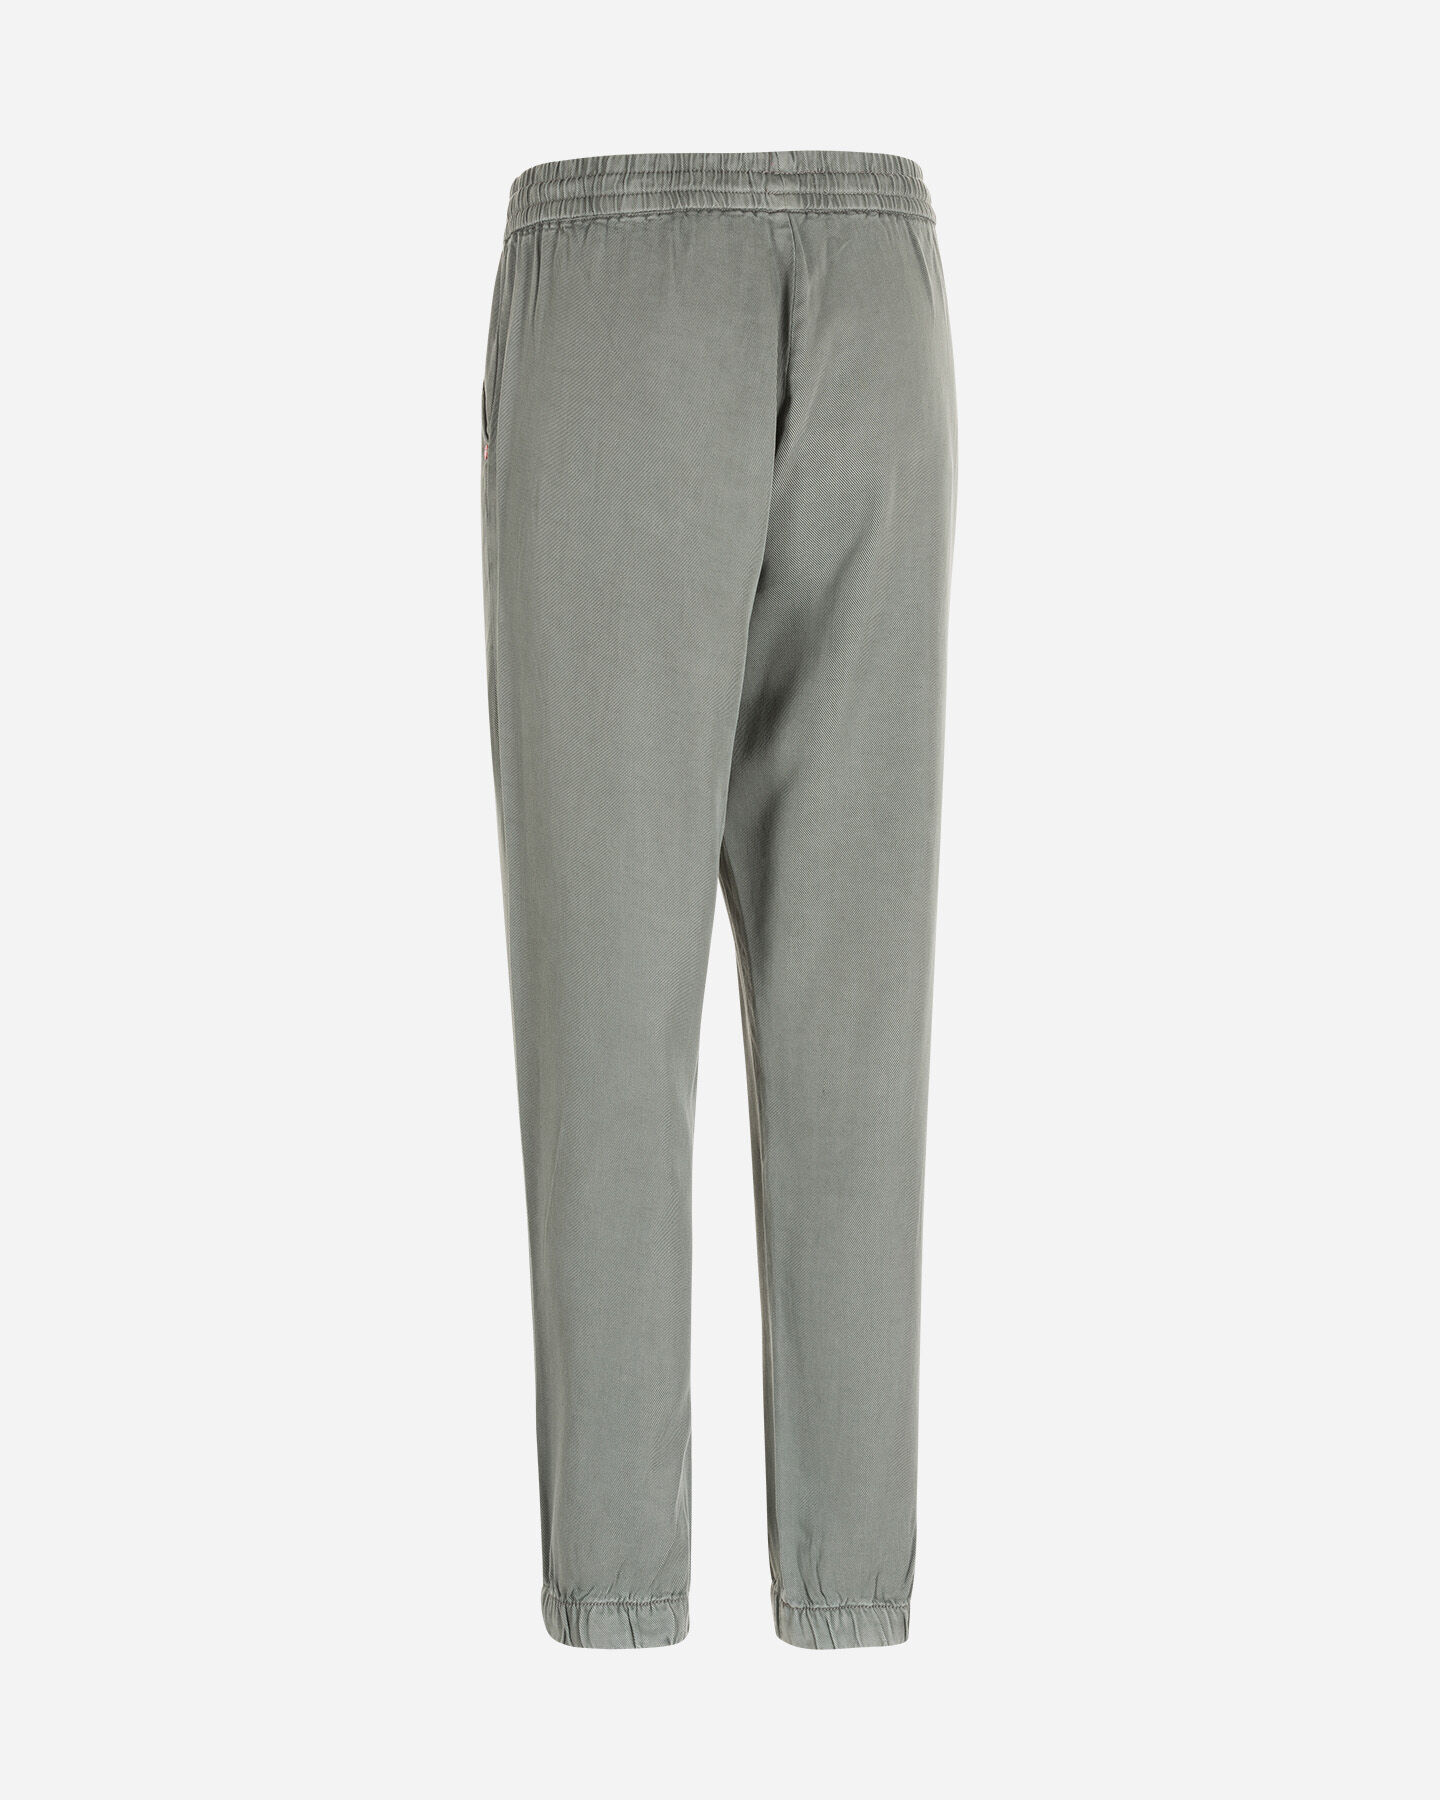  Pantalone MISTRAL JOGGER TENCEL W S4094136|845|S scatto 5